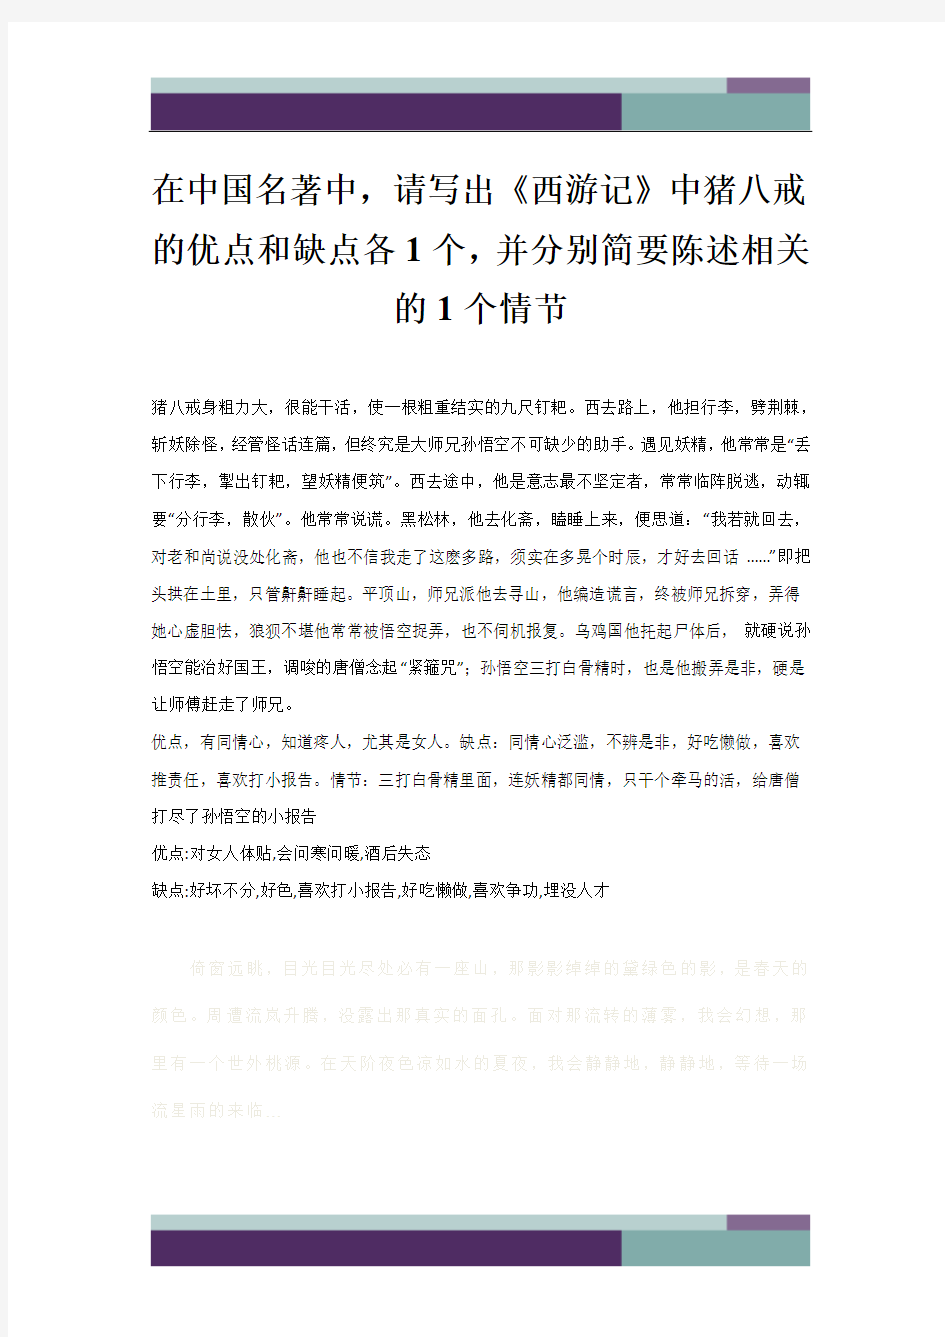 在中国名著中,请写出《西游记》中猪八戒的优点和缺点各1个,并分别简要陈述相关的1个情节